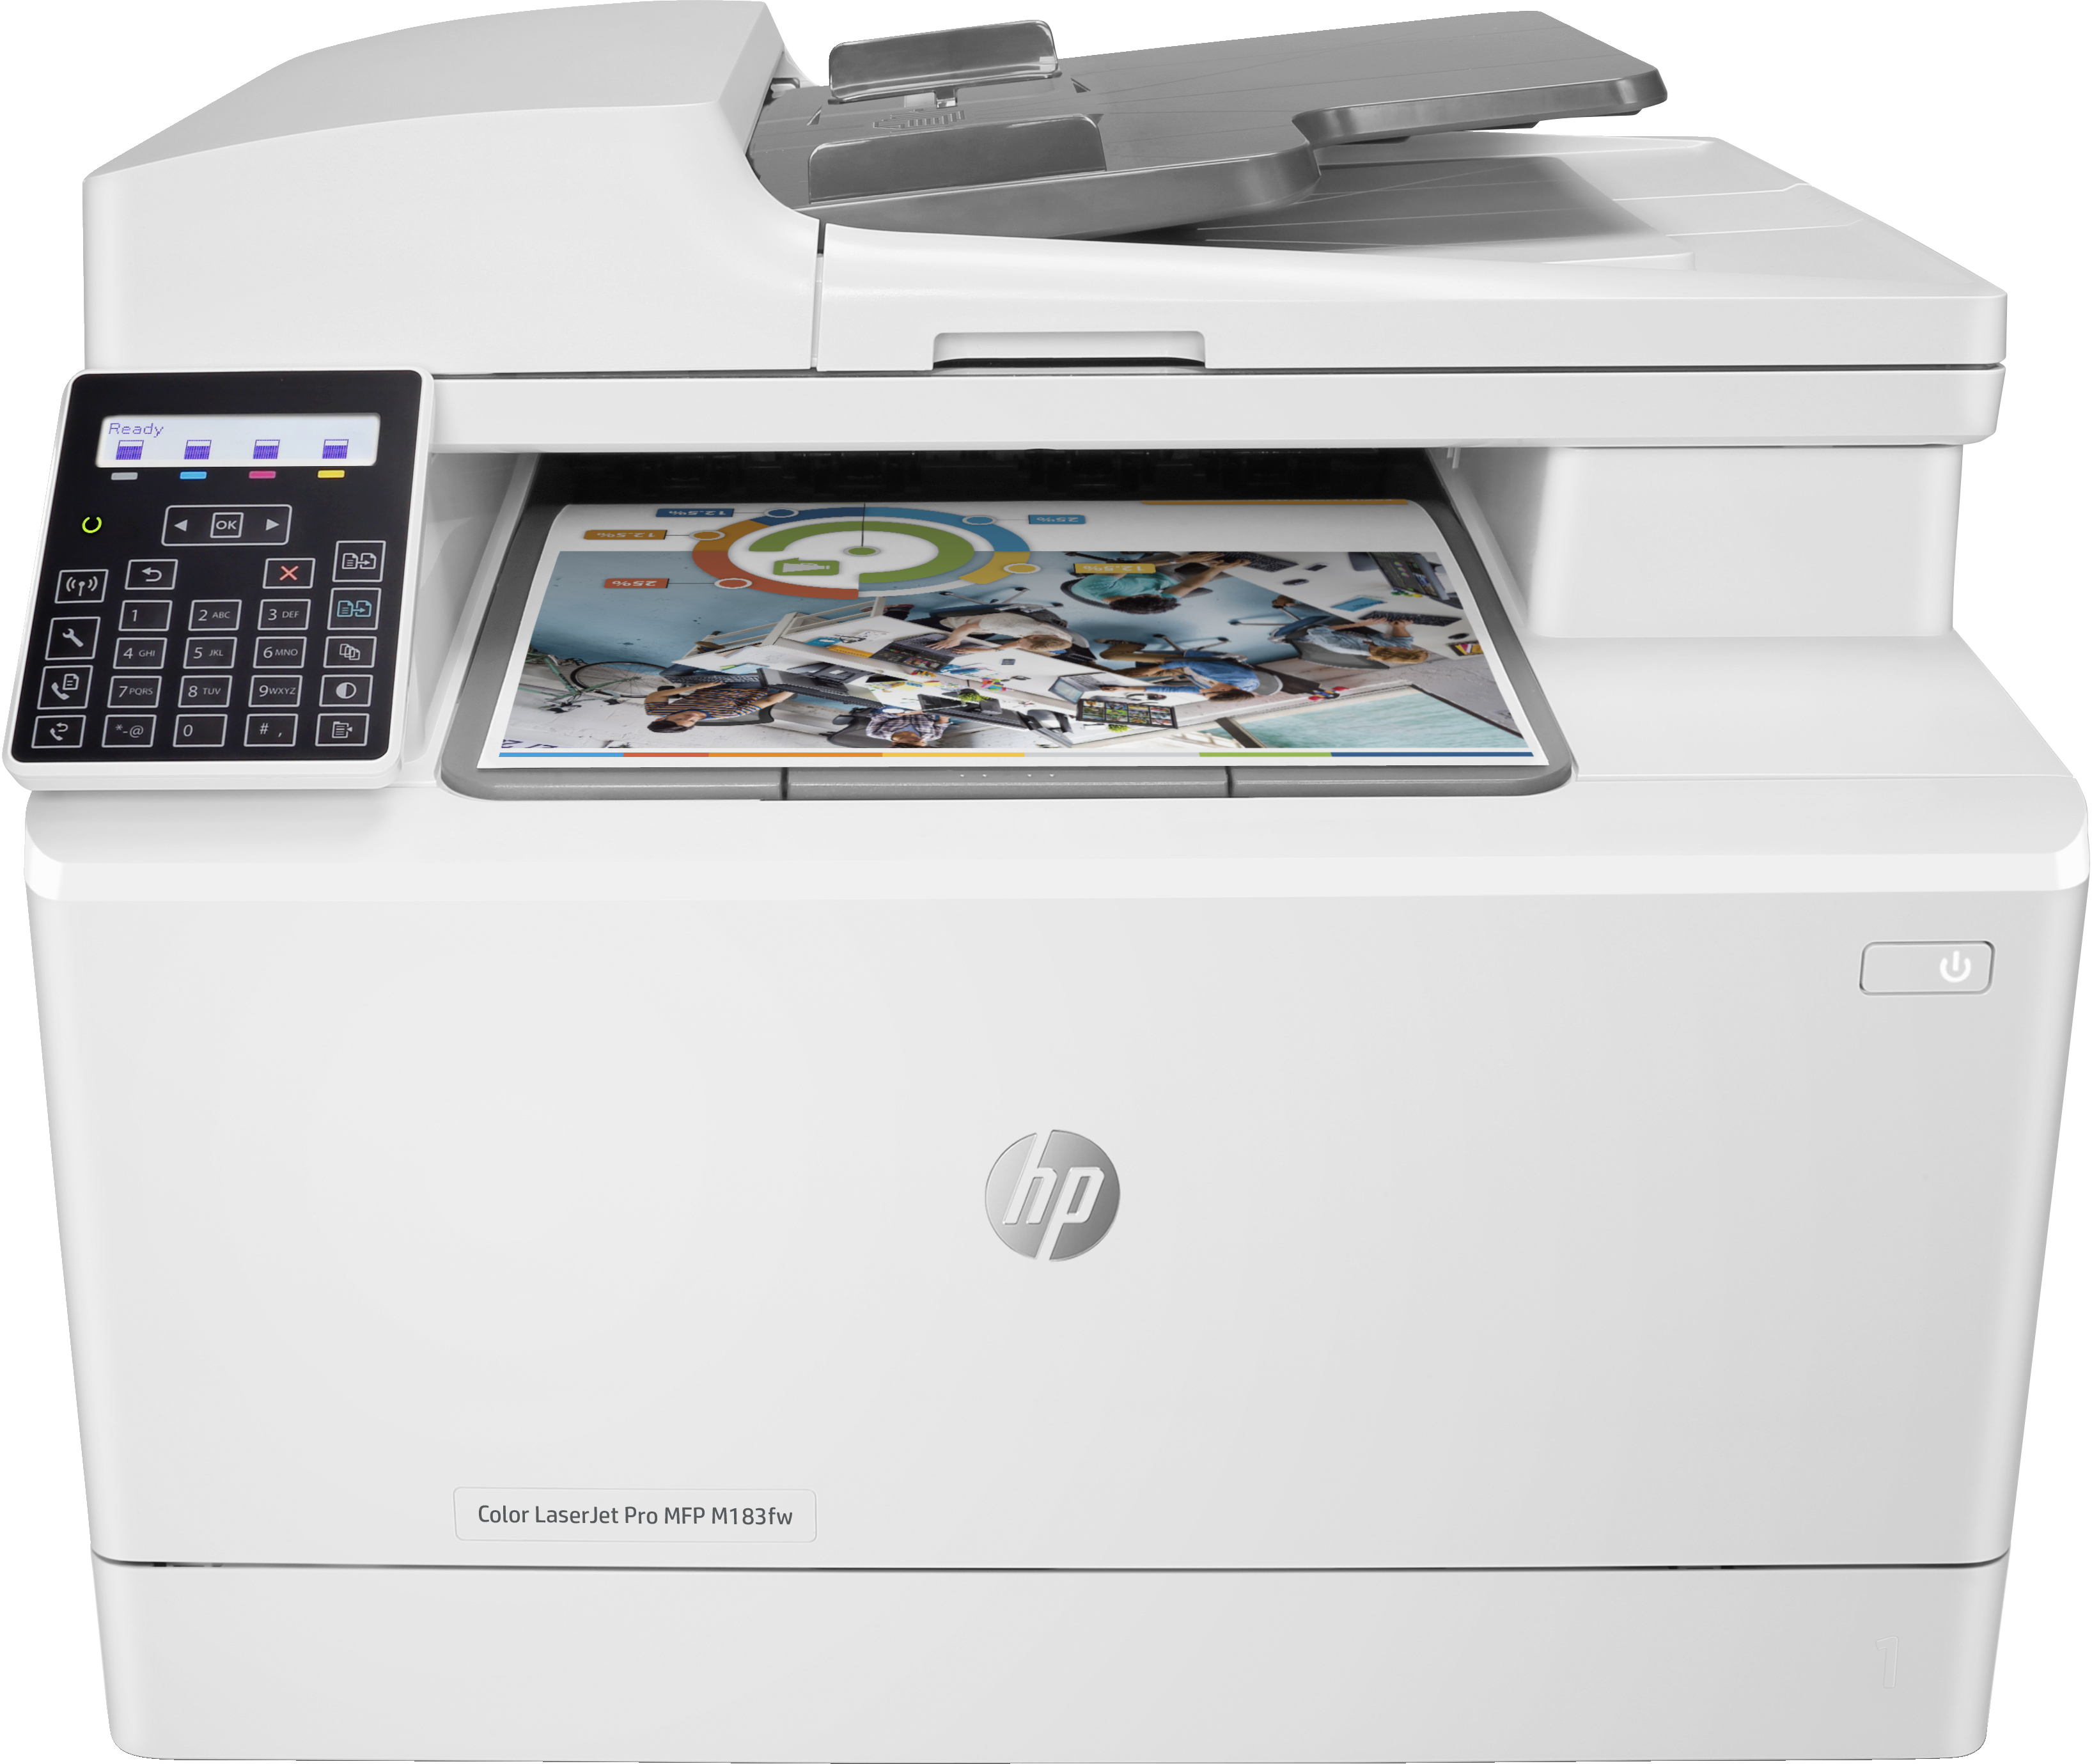 HP HP Color LaserJet Pro MFP M183fw, Kleur, Printer voor Printen, kopi&#235;ren, scannen, faxen, Automatische documentinvoer voor 35 vel; Energiezuinig; Optimale beveiliging; Dual-band Wi-Fi